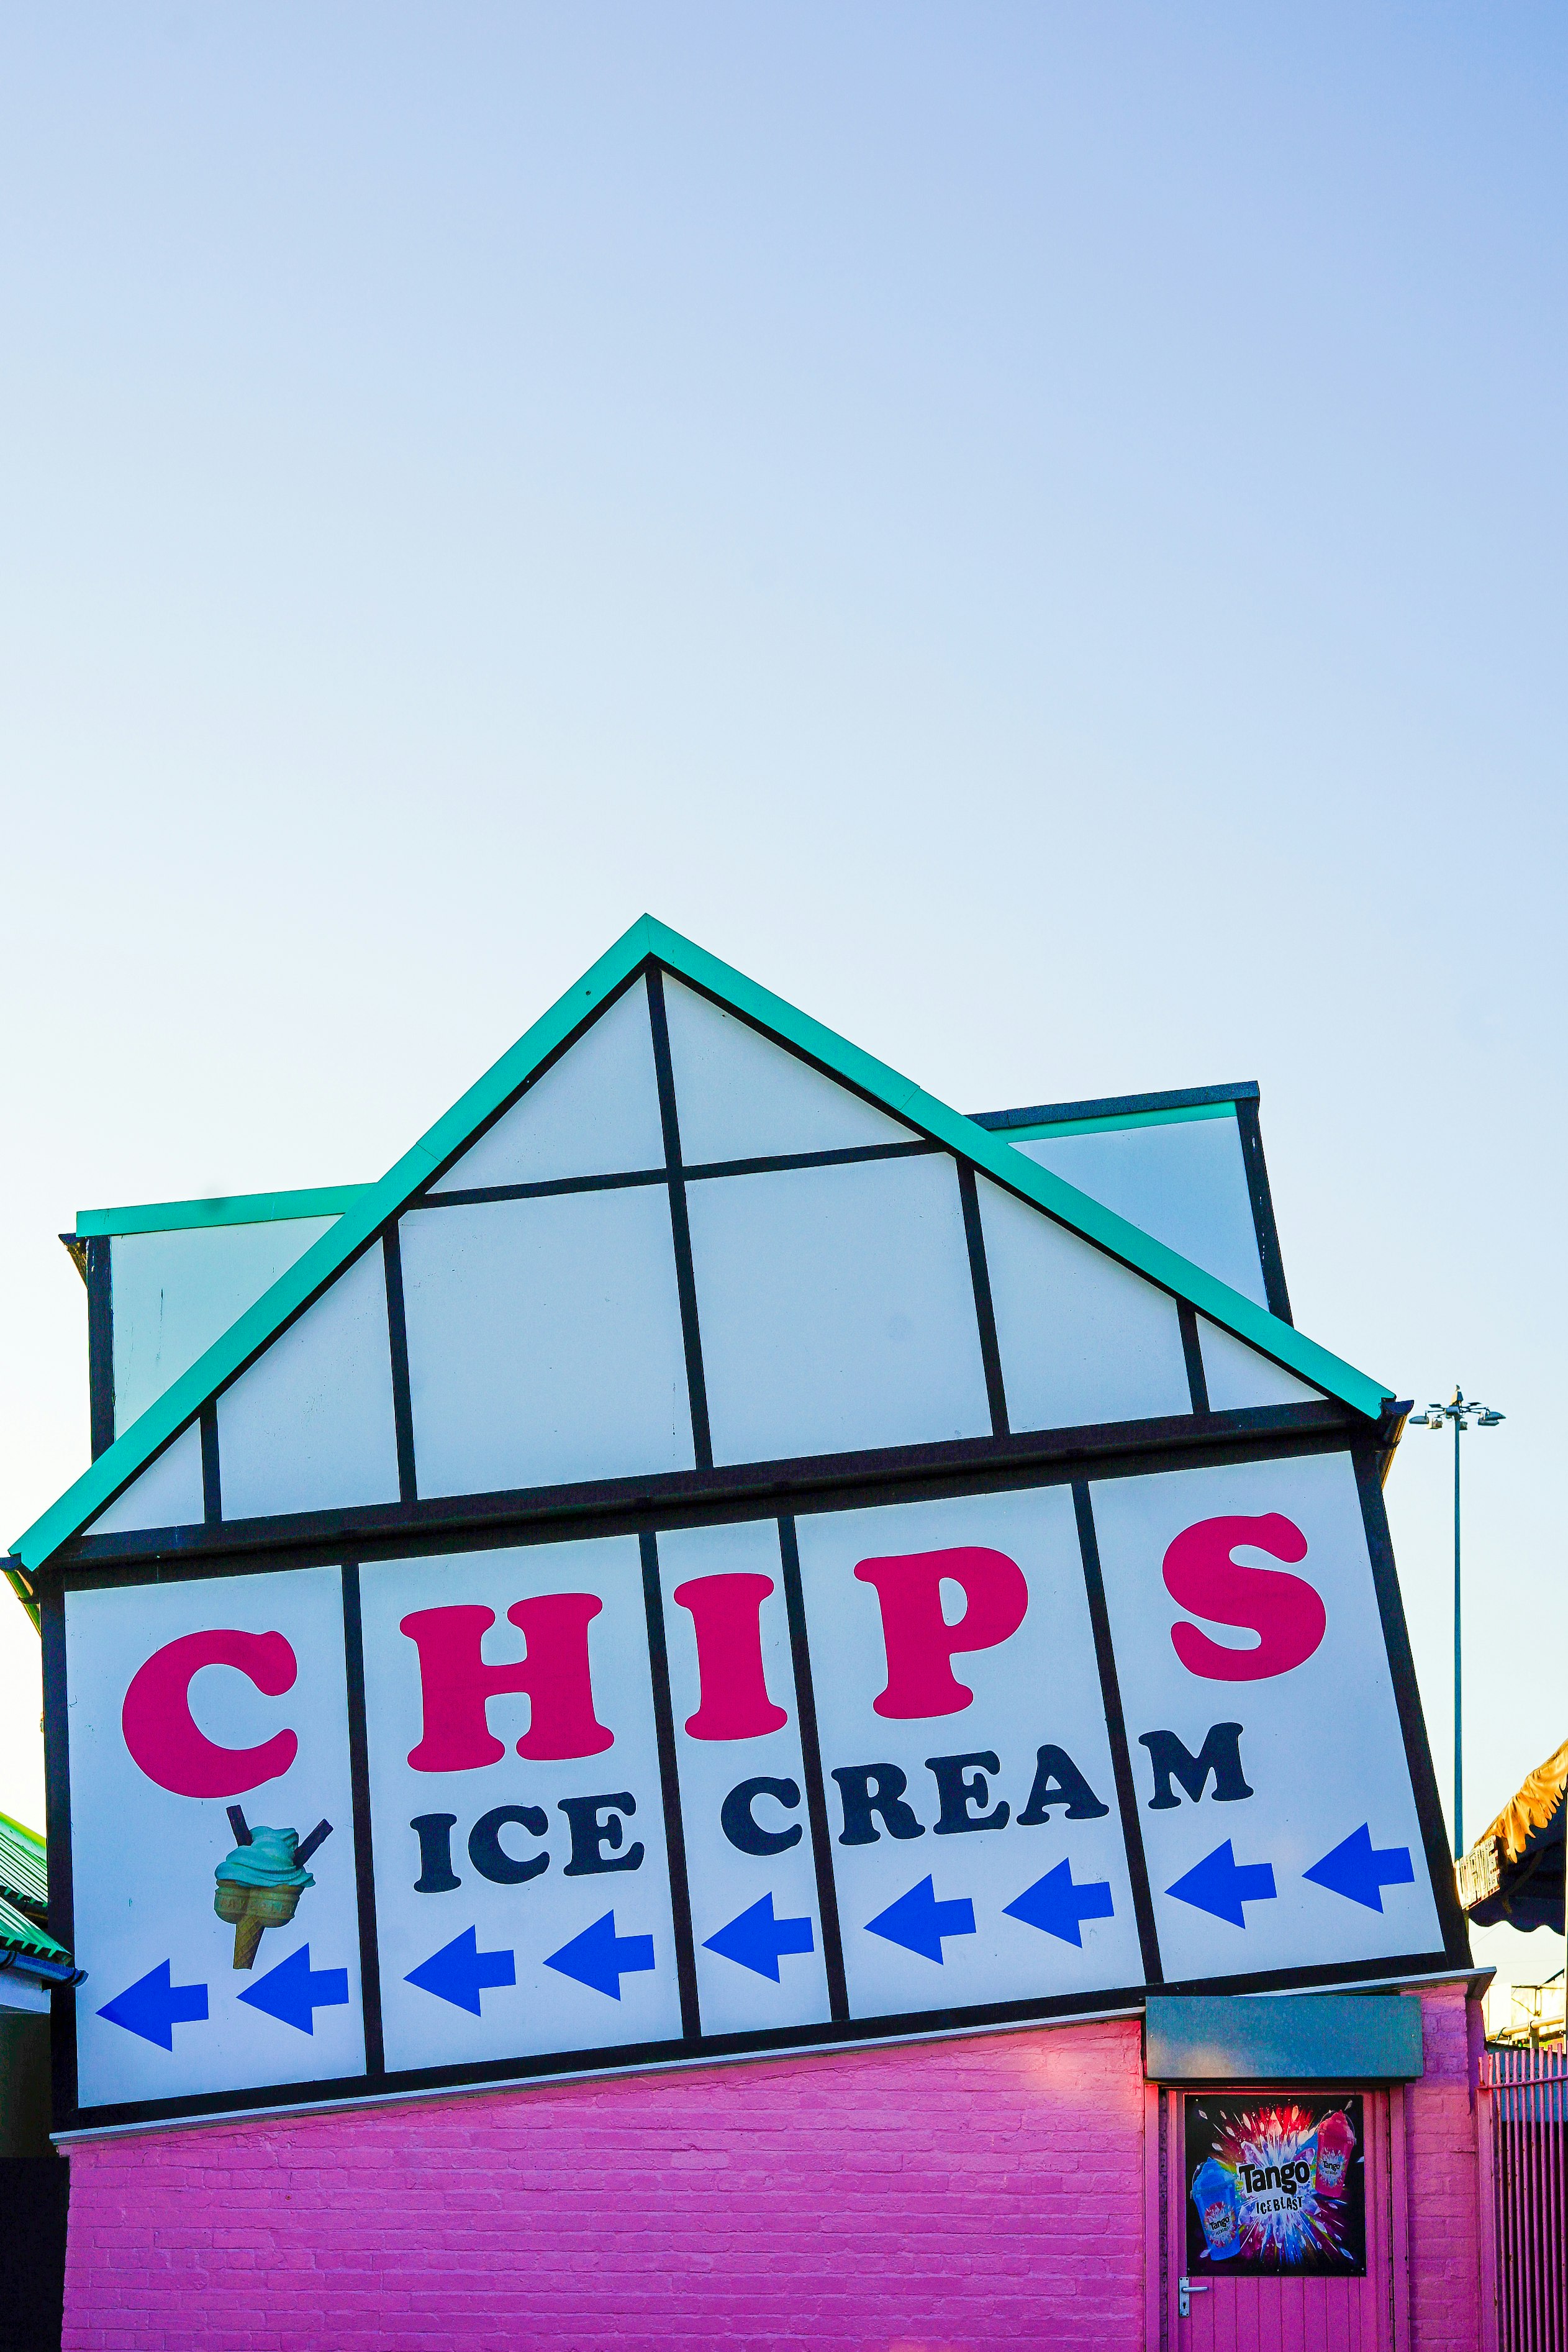 Chips ice cream store